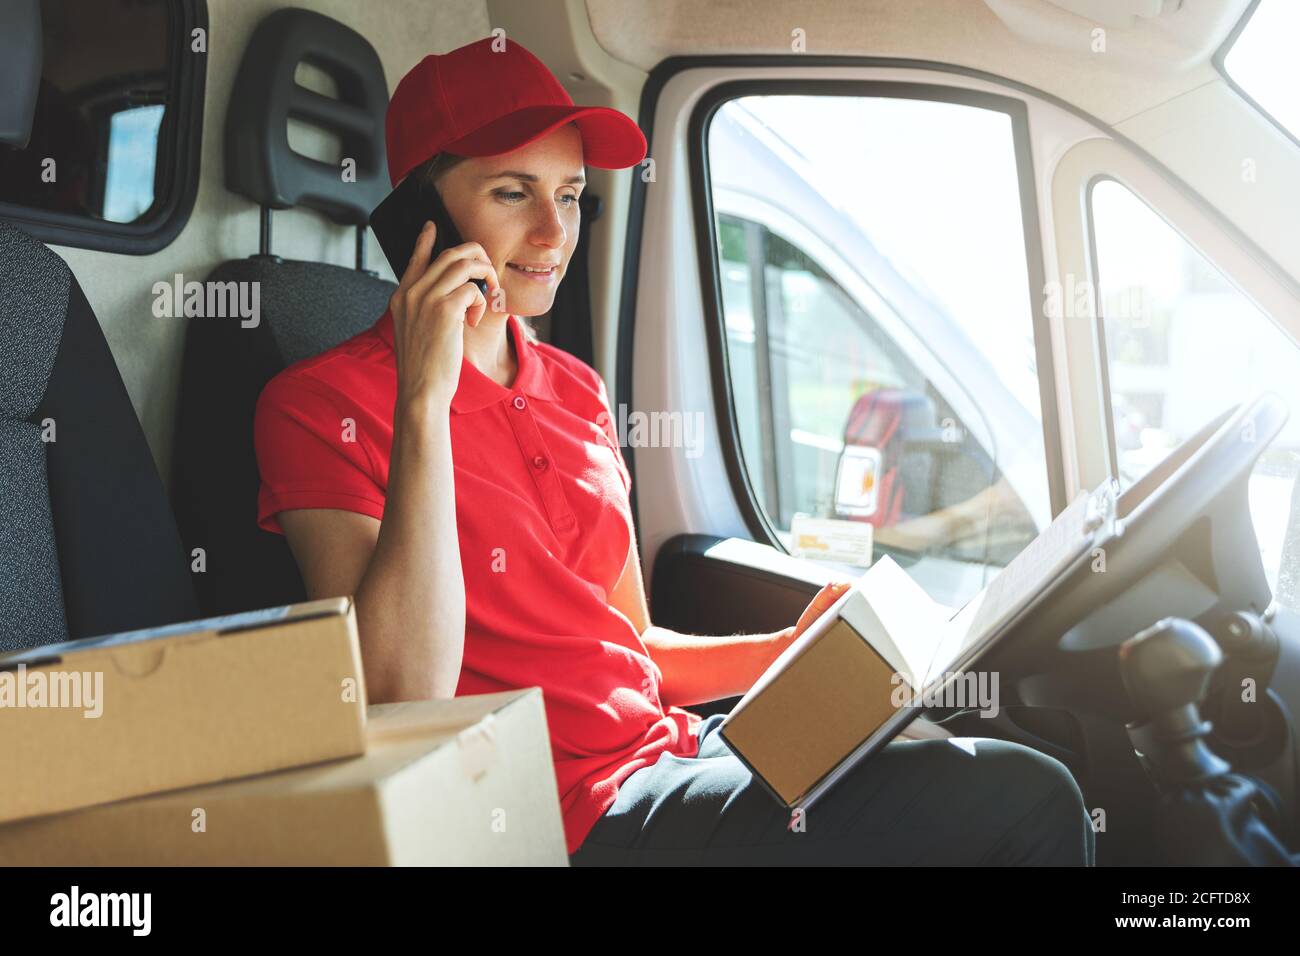 Delivery Frau im Van, die auf dem Handy spricht Stockfoto